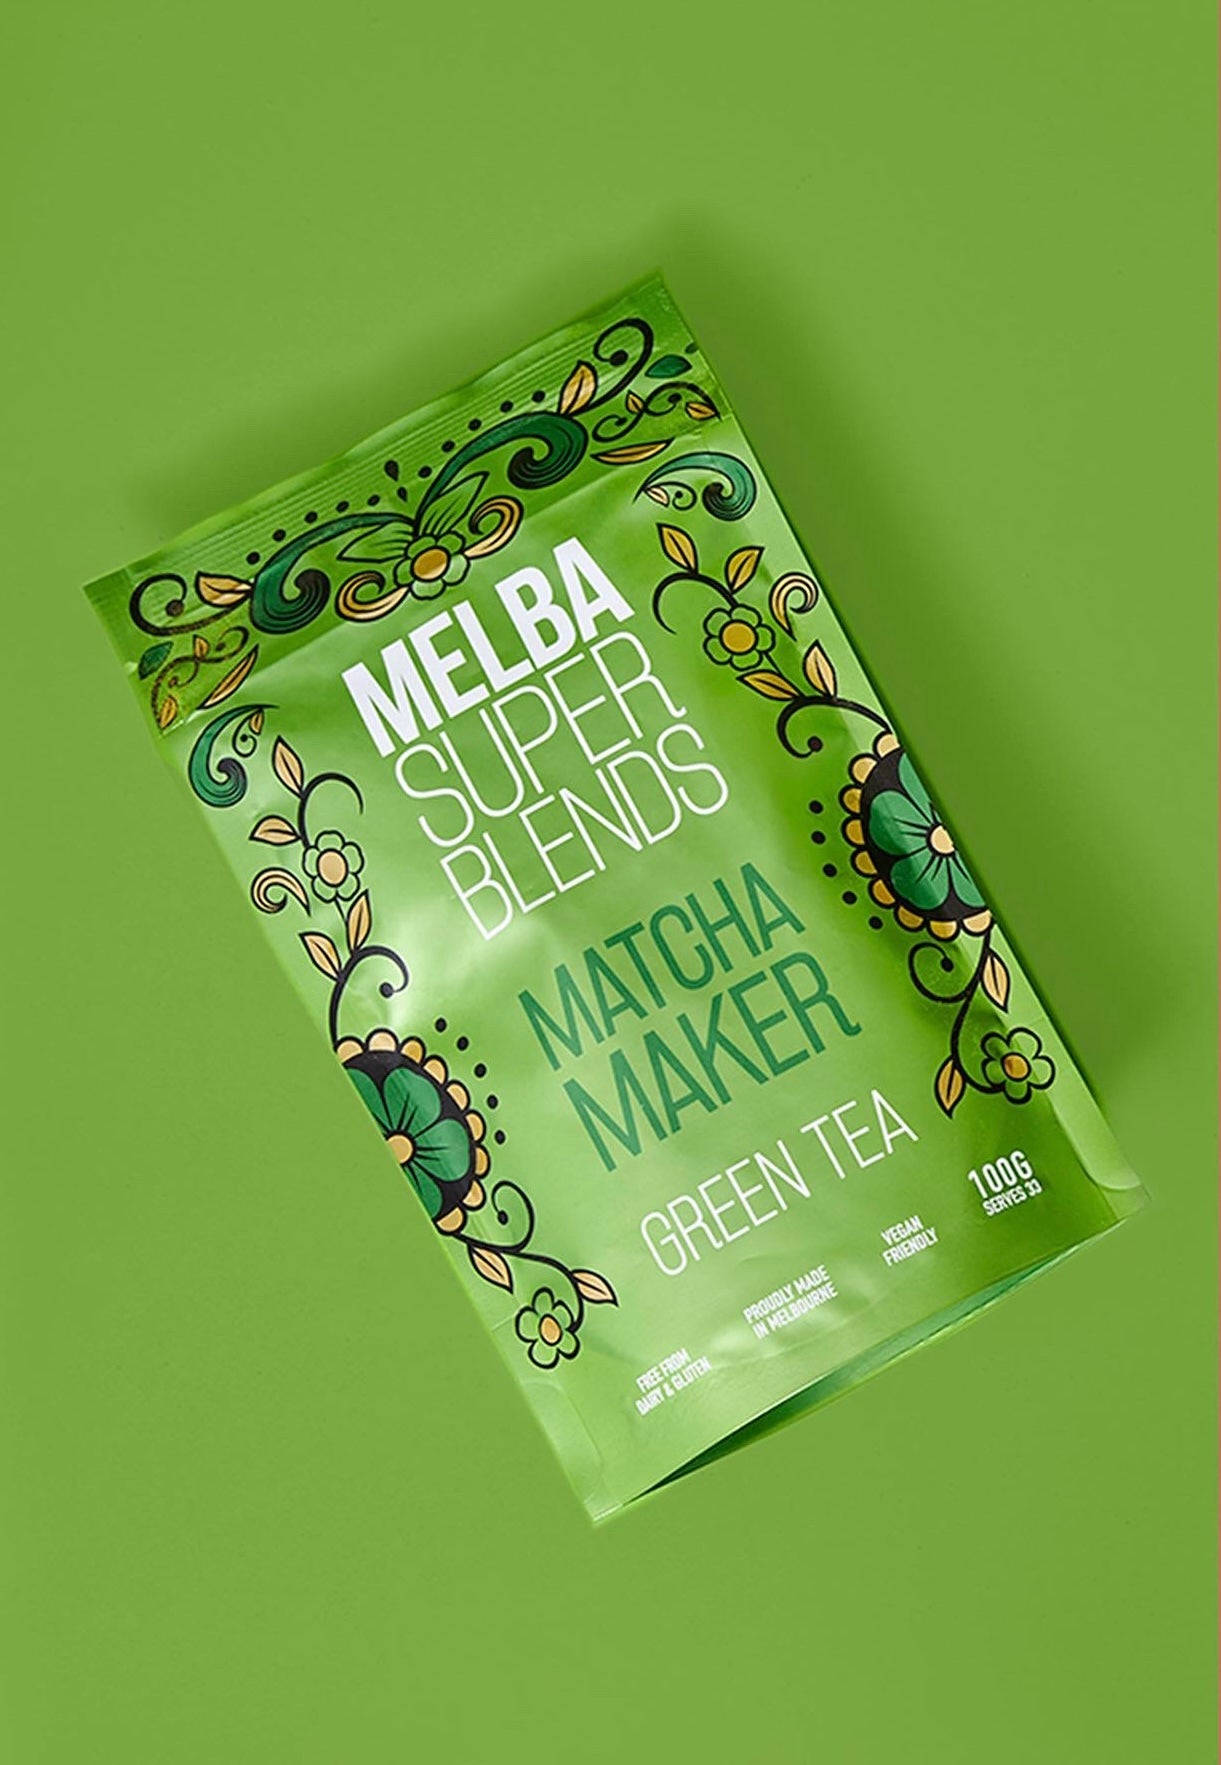 Melba Matcha Maker Super Blend